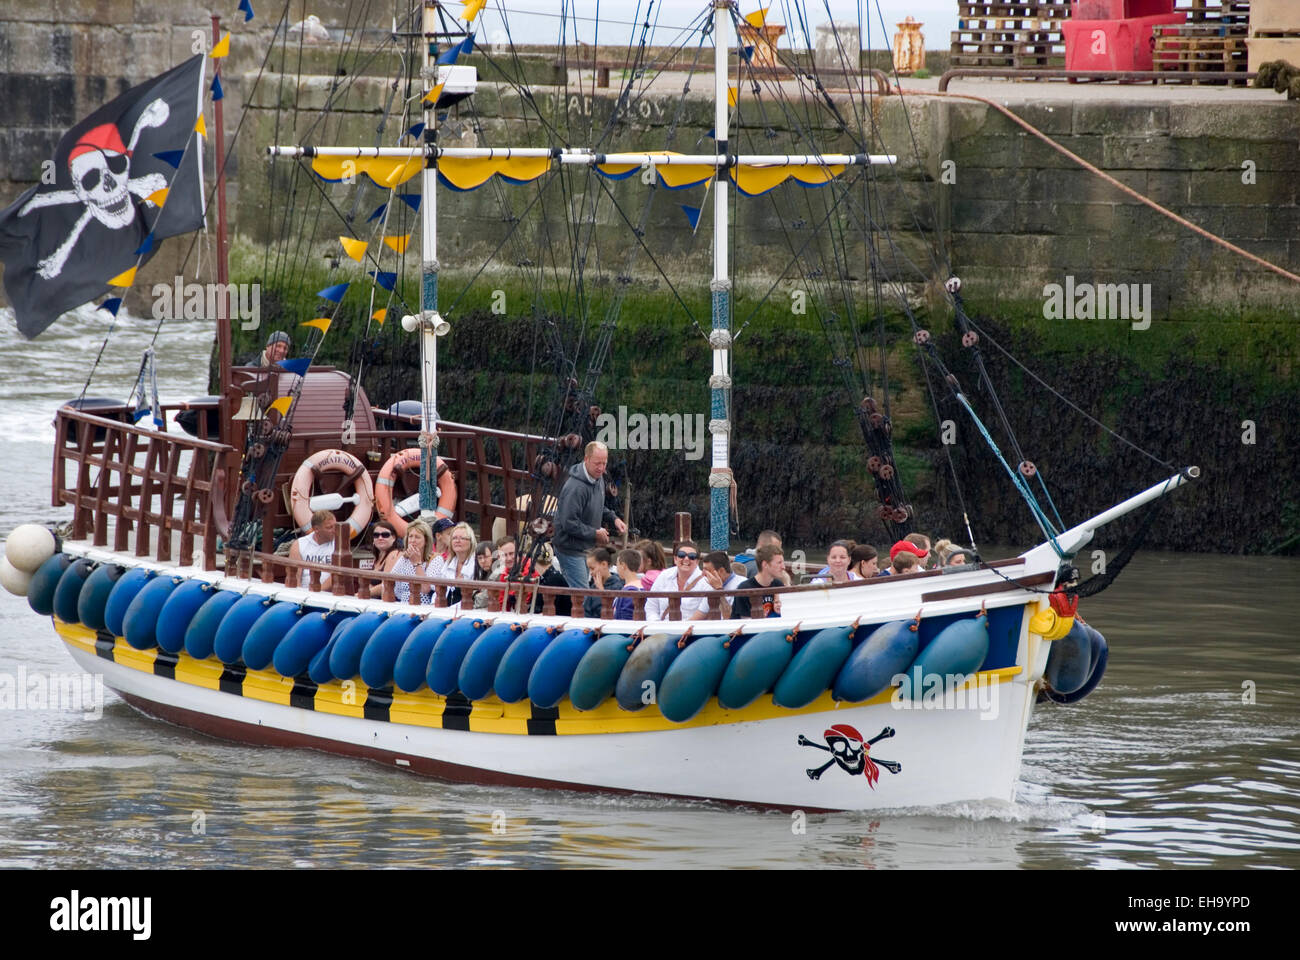 BRIDLINGTON, Inglaterra - 21 de julio: barco pirata lleno de pasajeros sale del puerto para un paseo frente al mar el 17 de julio de 2013 en Bridlin Foto de stock